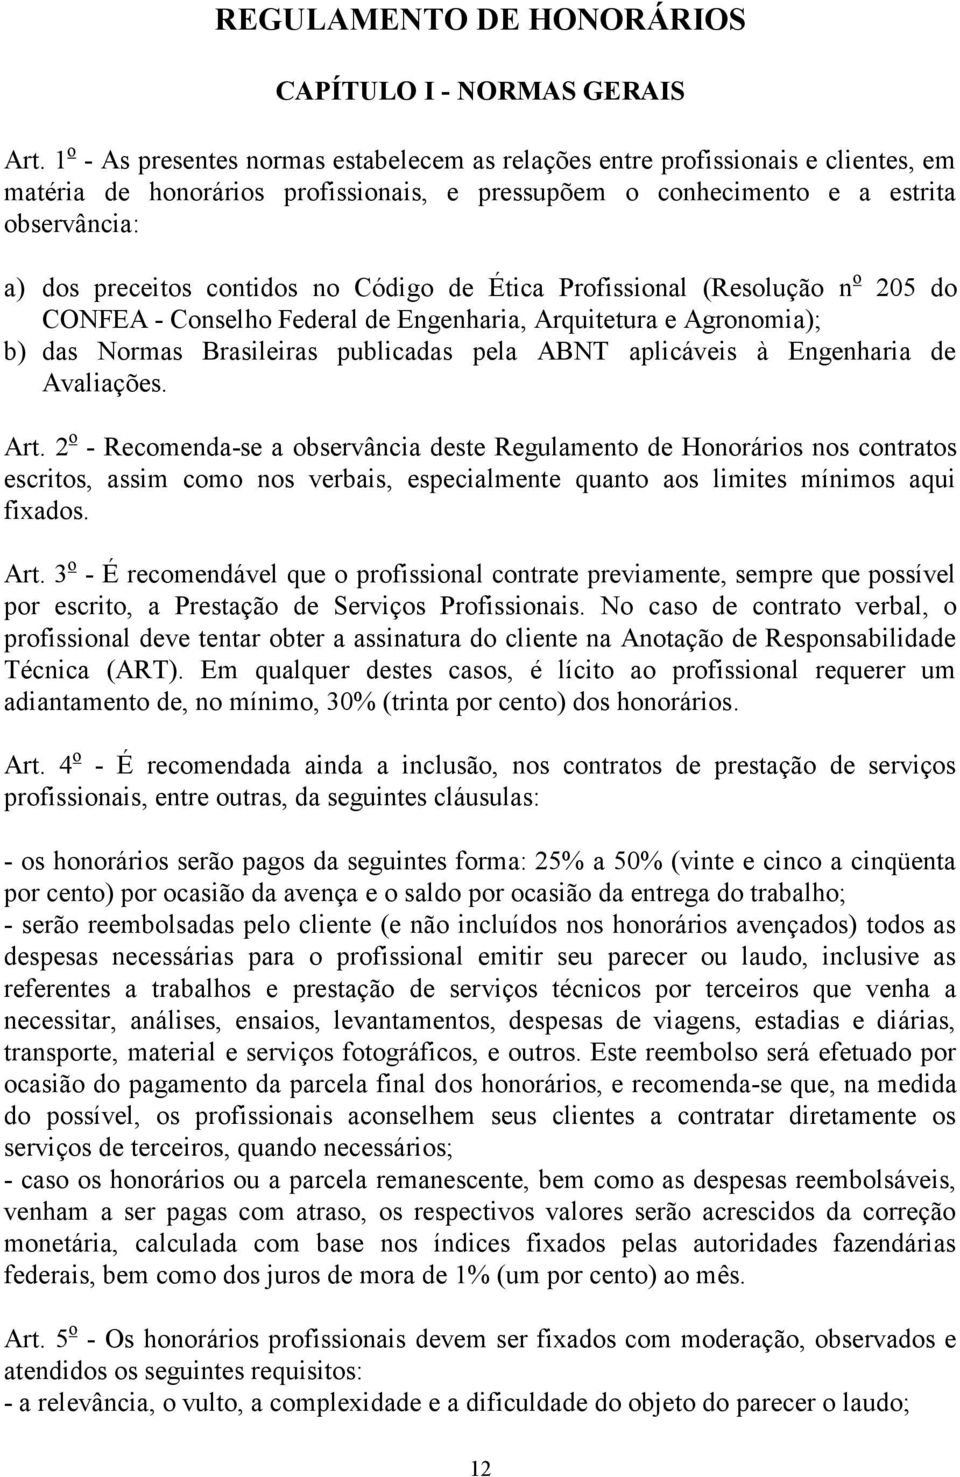 contidos no Código de Ética Profissional (Resolução n o 205 do CONFEA - Conselho Federal de Engenharia, Arquitetura e Agronomia); b) das Normas Brasileiras publicadas pela ABNT aplicáveis à